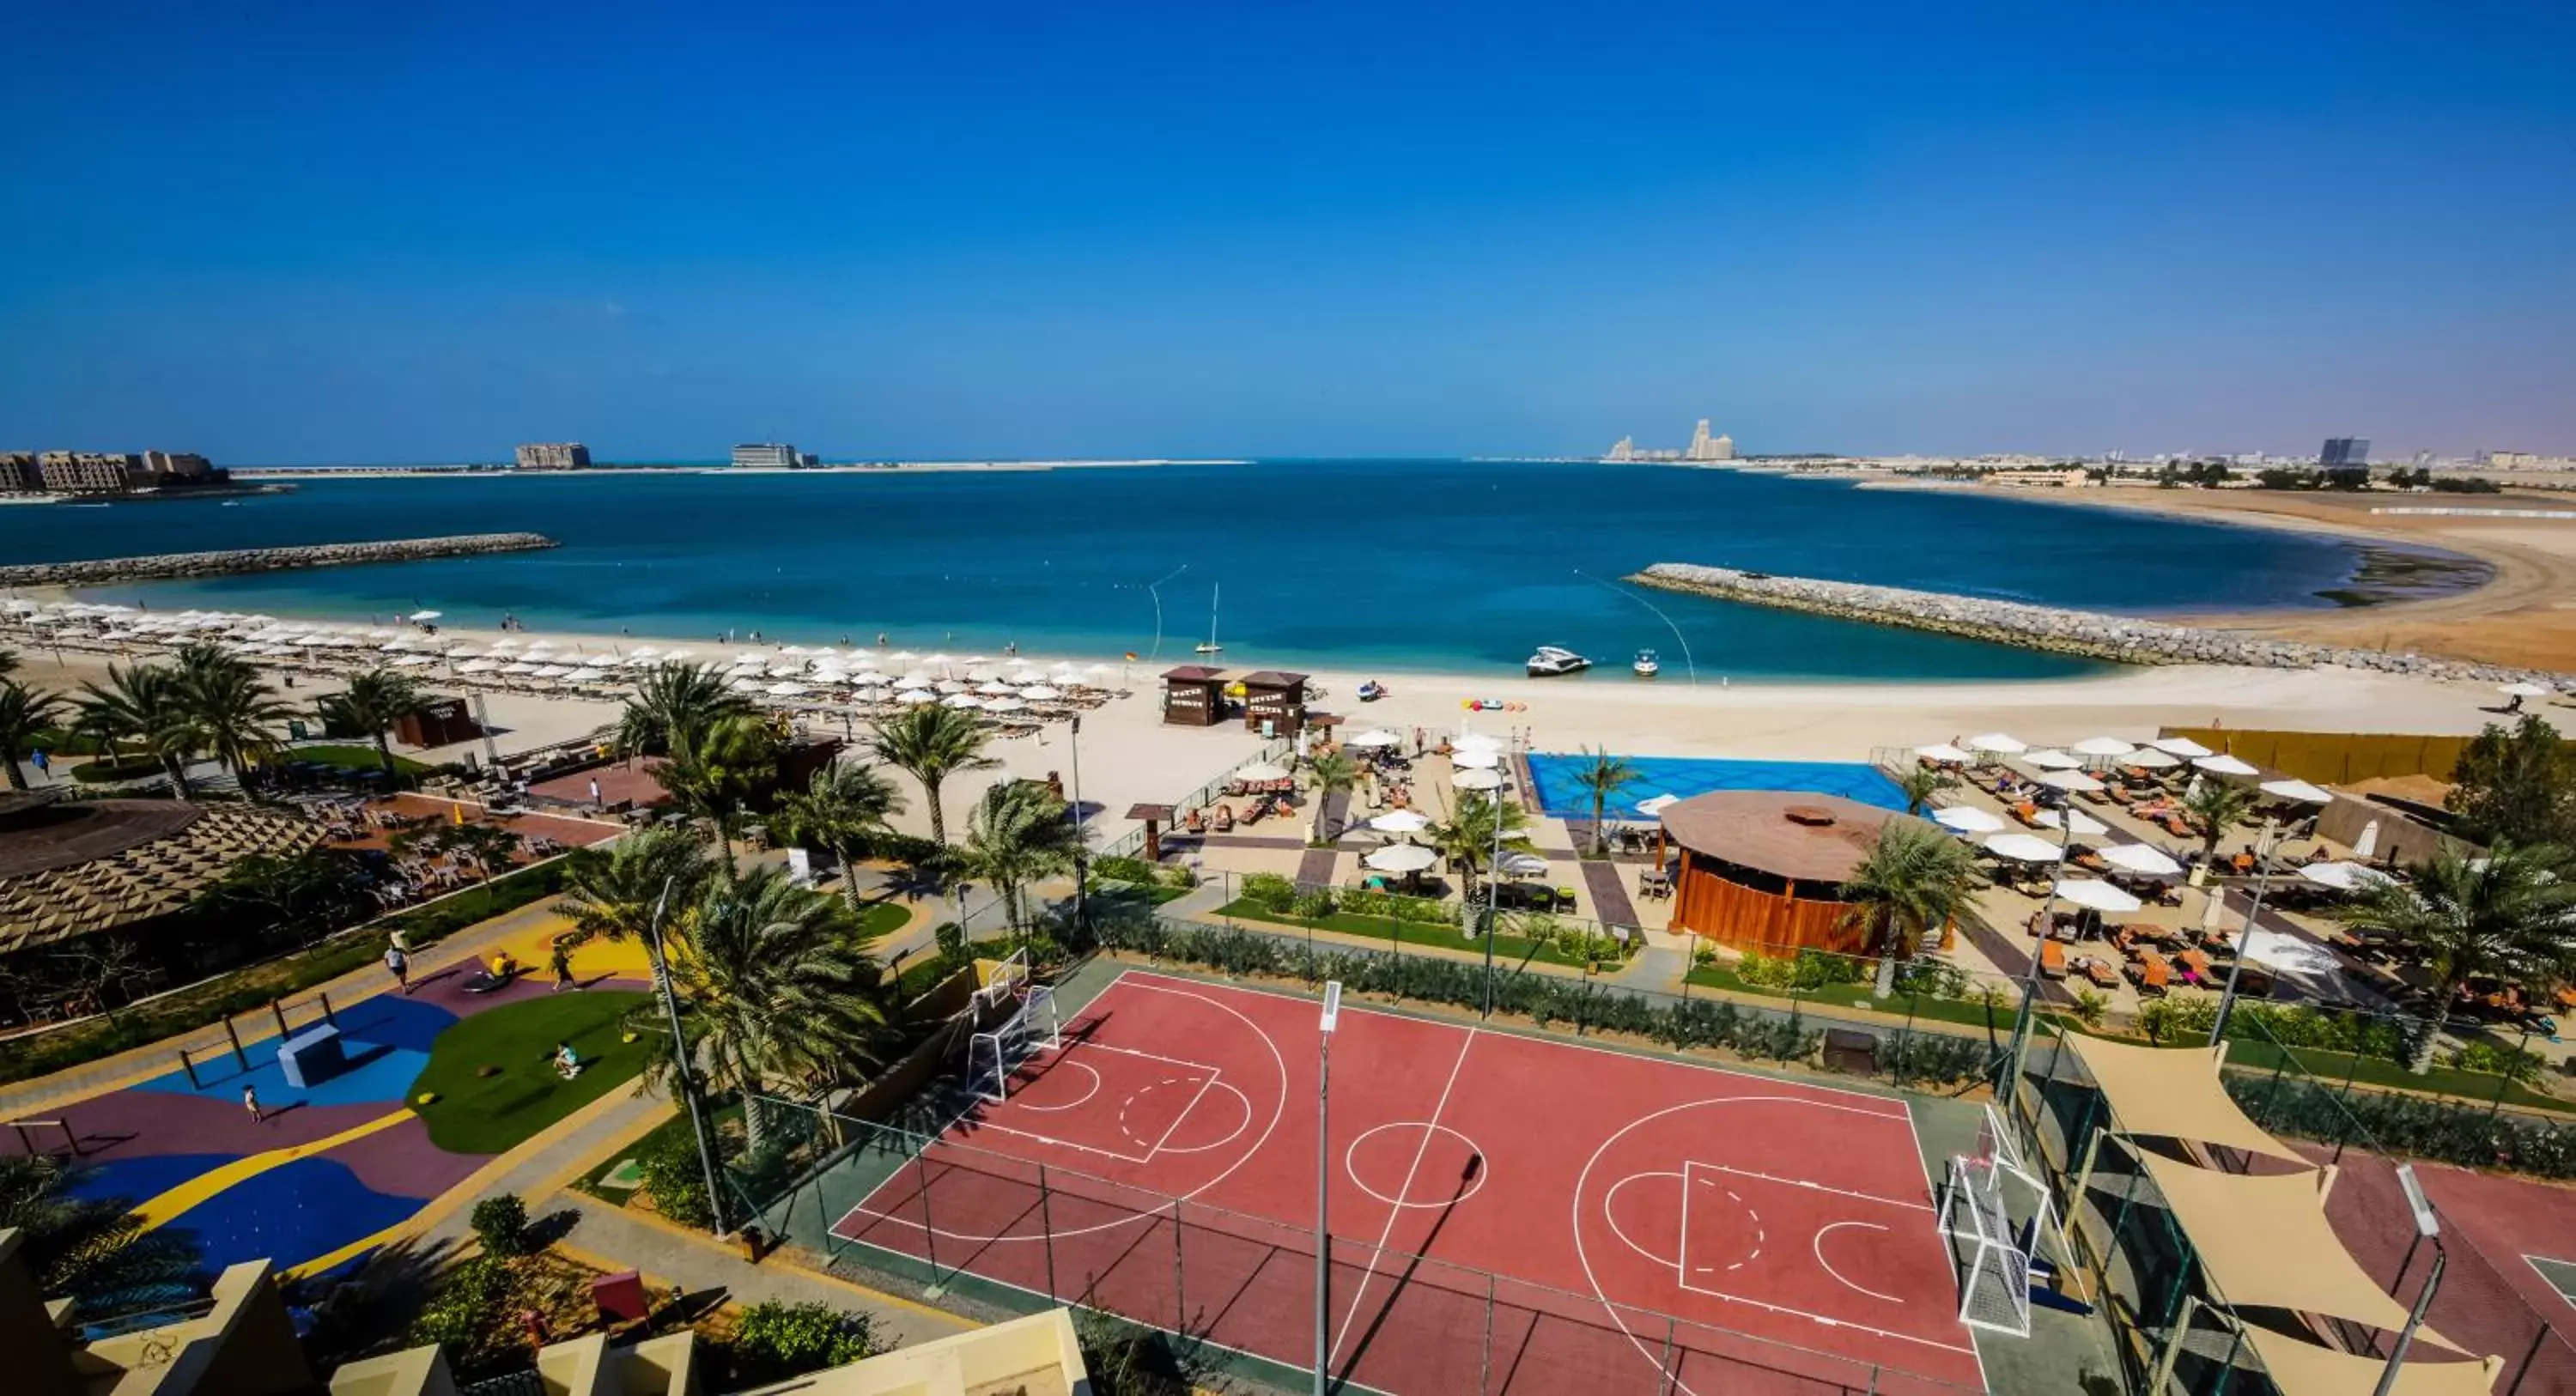 Tennis court, Bird's-eye View in Rixos Bab Al Bahr